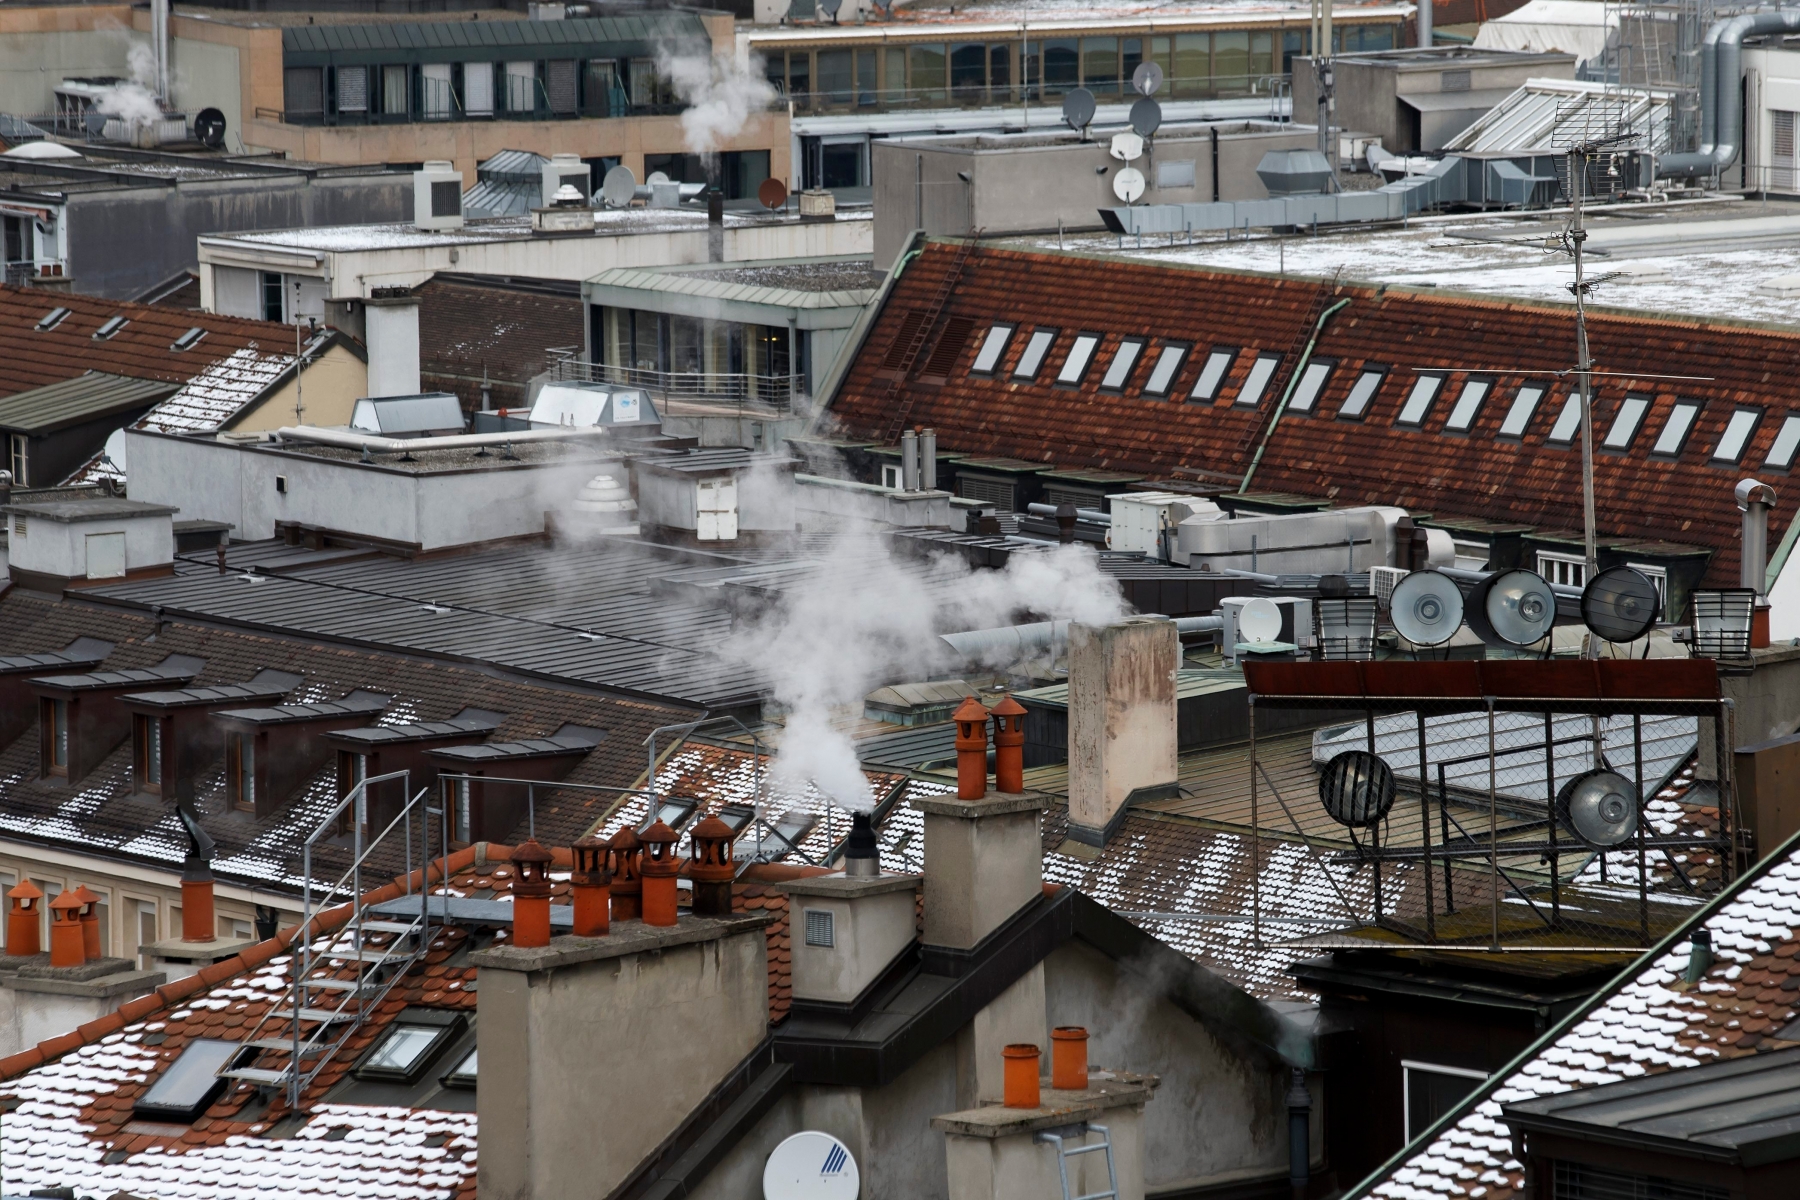 Les fumees s'echappent des cheminees sur les toits de la ville, ce lundi 18 janvier 2016 a Geneve. Le gouvernement genevois entend mettre en place une veritable strategie pour ameliorer la qualite de l'air dans le canton. Des objectifs chiffres de diminution des emissions polluantes ont ete fixes. D'ici a 2030, Geneve vise une reduction de 50 pourcent des emissions d'oxydes d'azote et de 18 pourcent des particules fines, a explique lundi devant la presse le conseiller d'Etat Luc Barthassat. Pour parvenir a ces resultats, plusieurs pistes ont ete evoquees, mais aucune decision n'a pour l'instant ete prise. (KEYSTONE/Salvatore Di Nolfi) SCHWEIZ GENF LUFTQUALITAET STRATEGIE